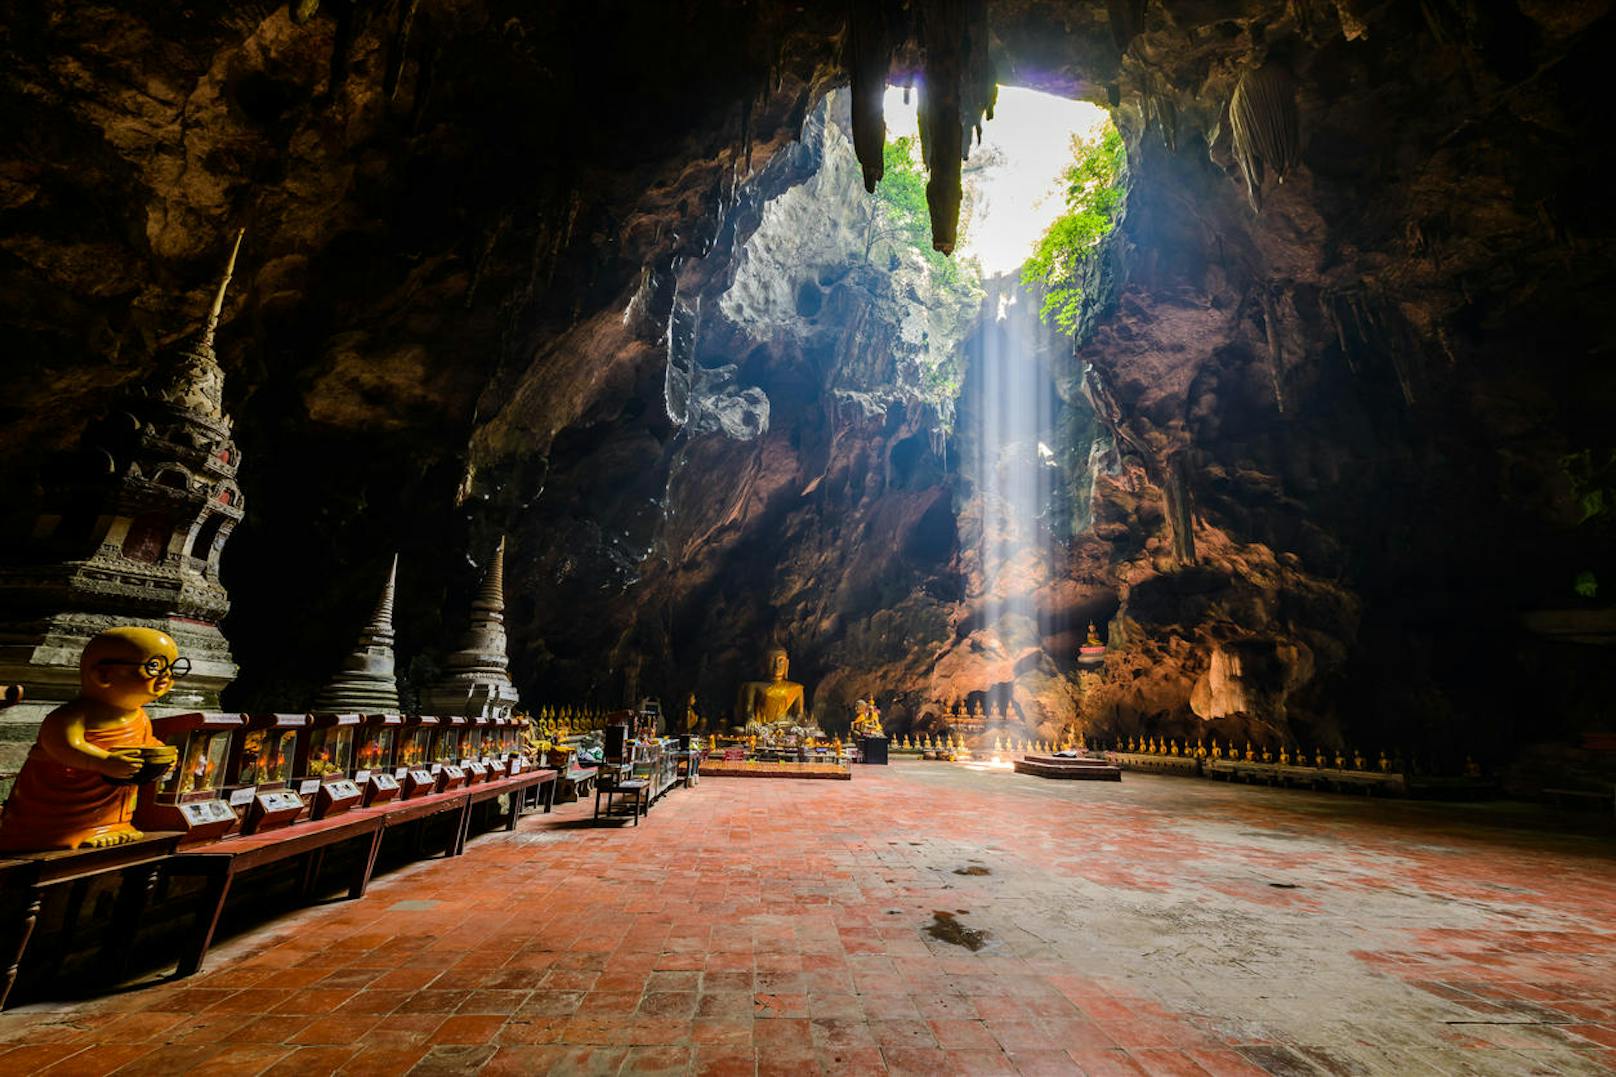 <b>Tham Khao Luang Höhlenschrein - Phetchaburi, Thailand</b>
Über einige Steintreppen gelangt man hier nicht nur in eine fantastisch schöne unterirdische Struktur, sondern in einen umwerfenden Schrein, der einst von Rama IV erbaut wurde.